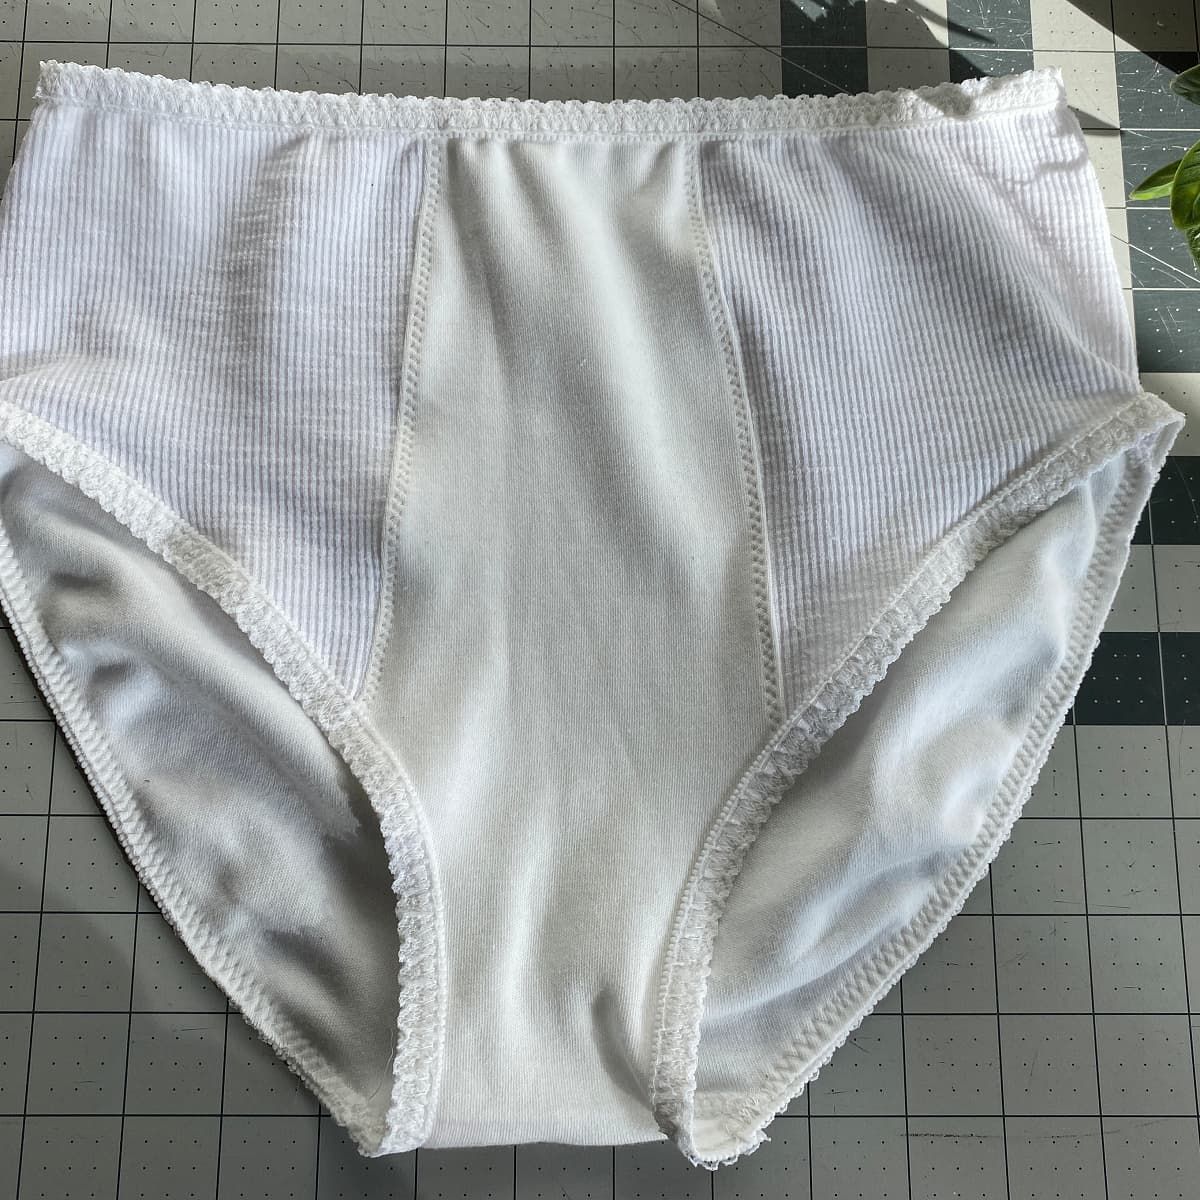 make your own underwear